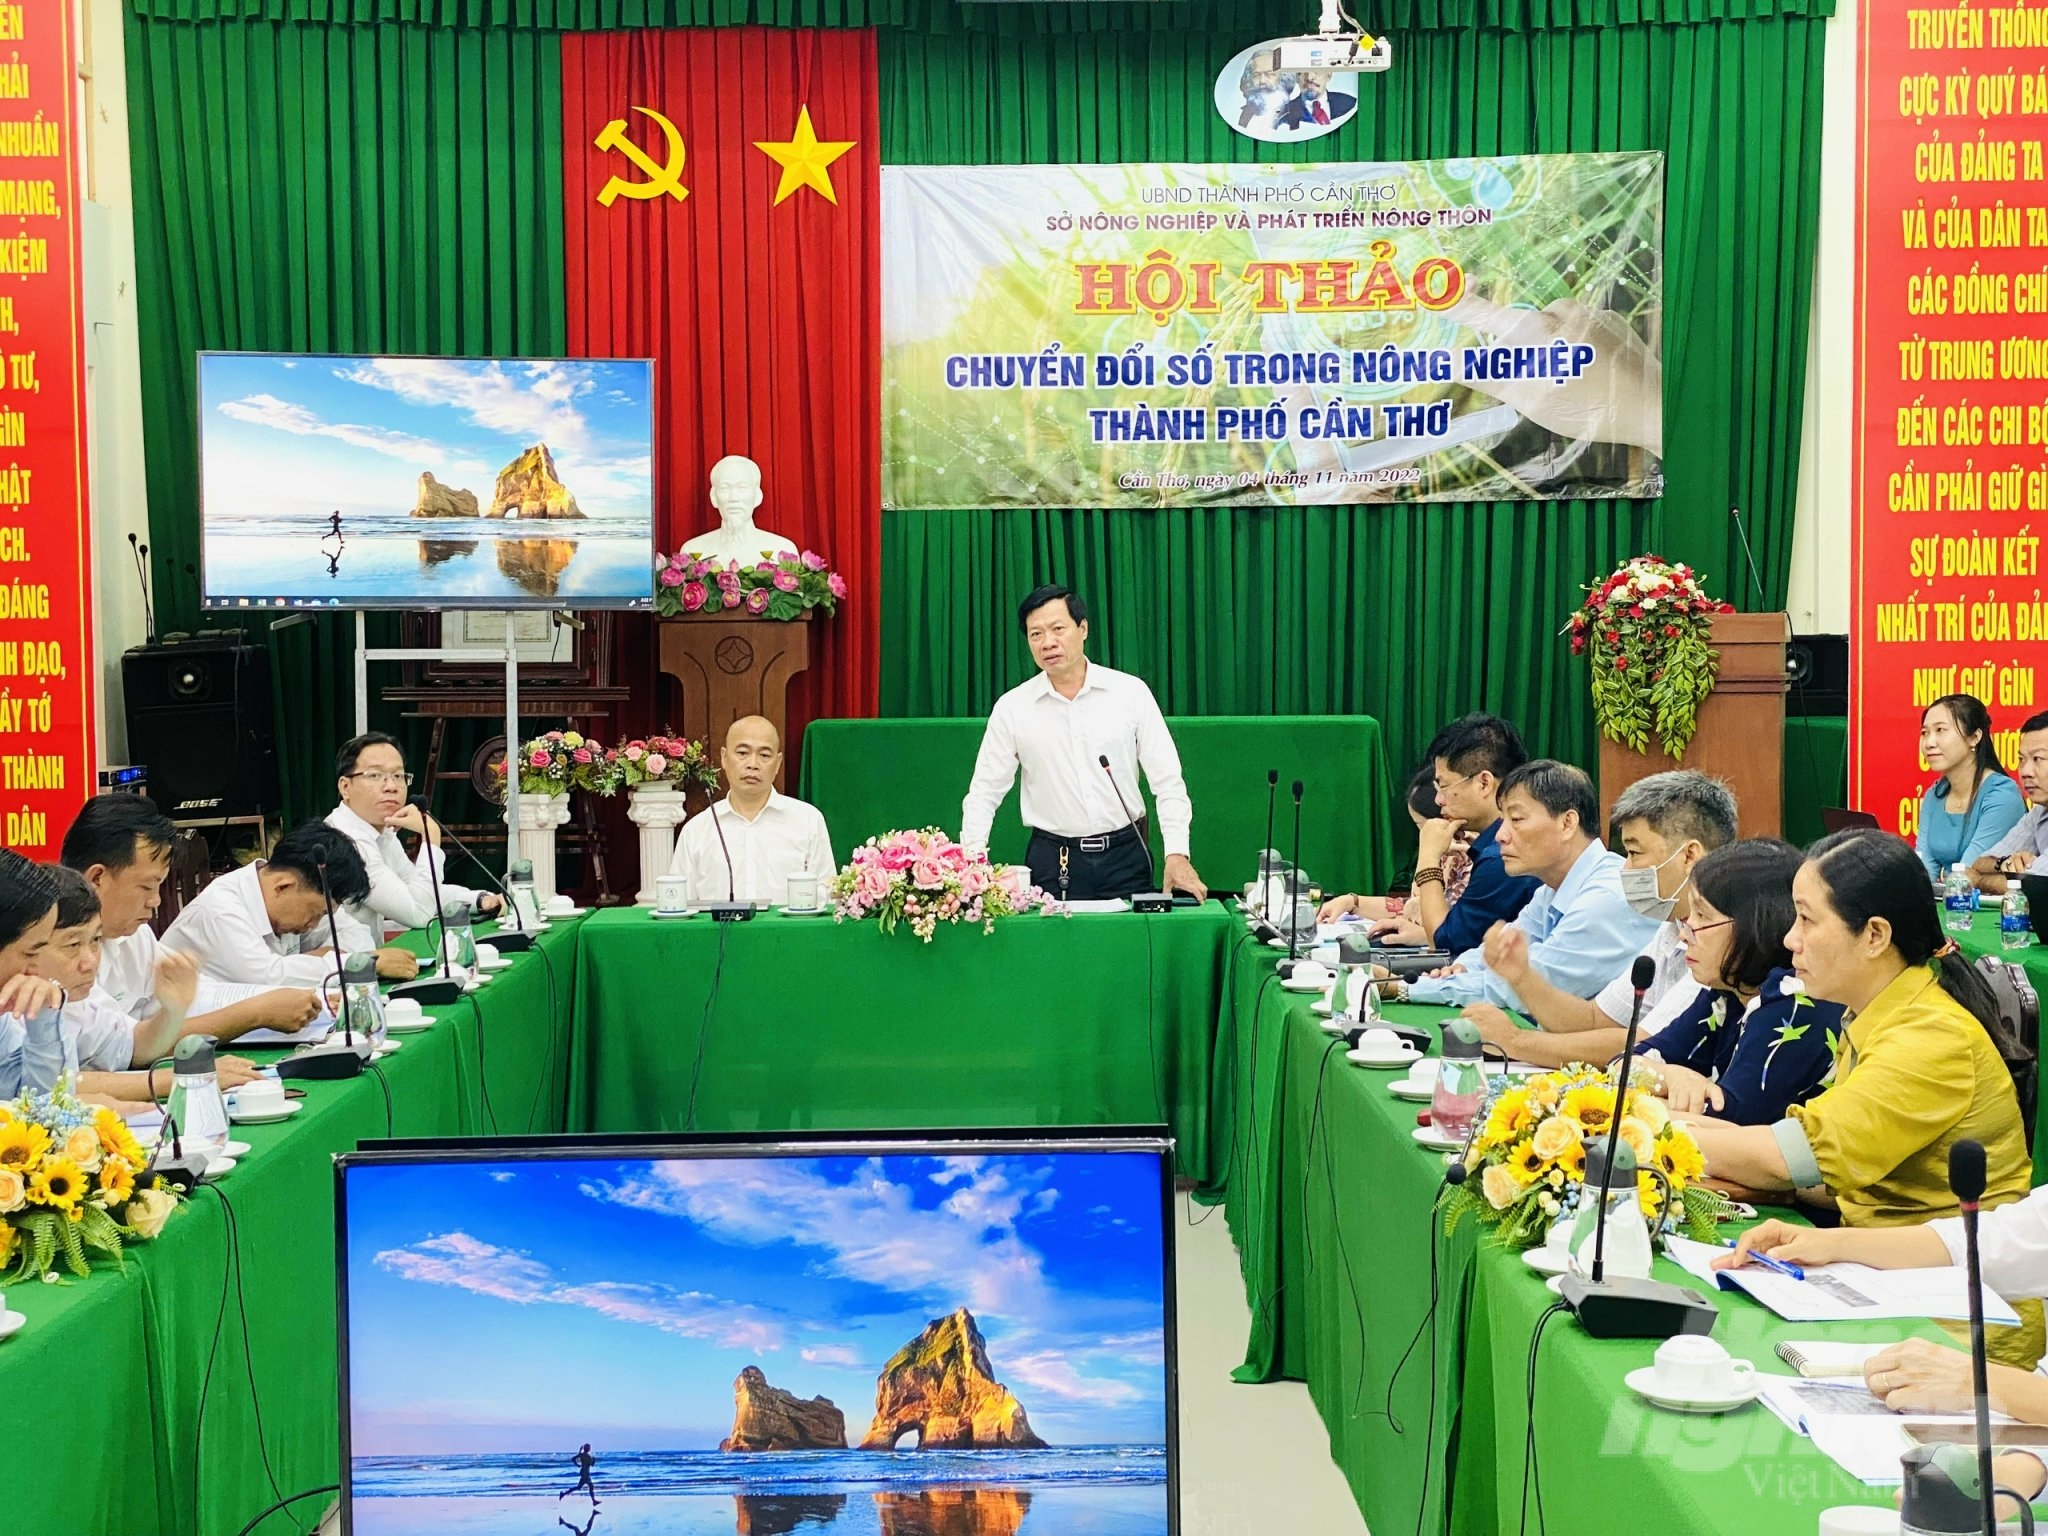 Ông Nguyễn Tấn Nhơn, Phó Giám đốc Sở NN-PTNT TP Cần Thơ phát biểu tại hội thảo chuyển đổi số trong nông nghiệp. Ảnh: Lê Hoàng Vũ.